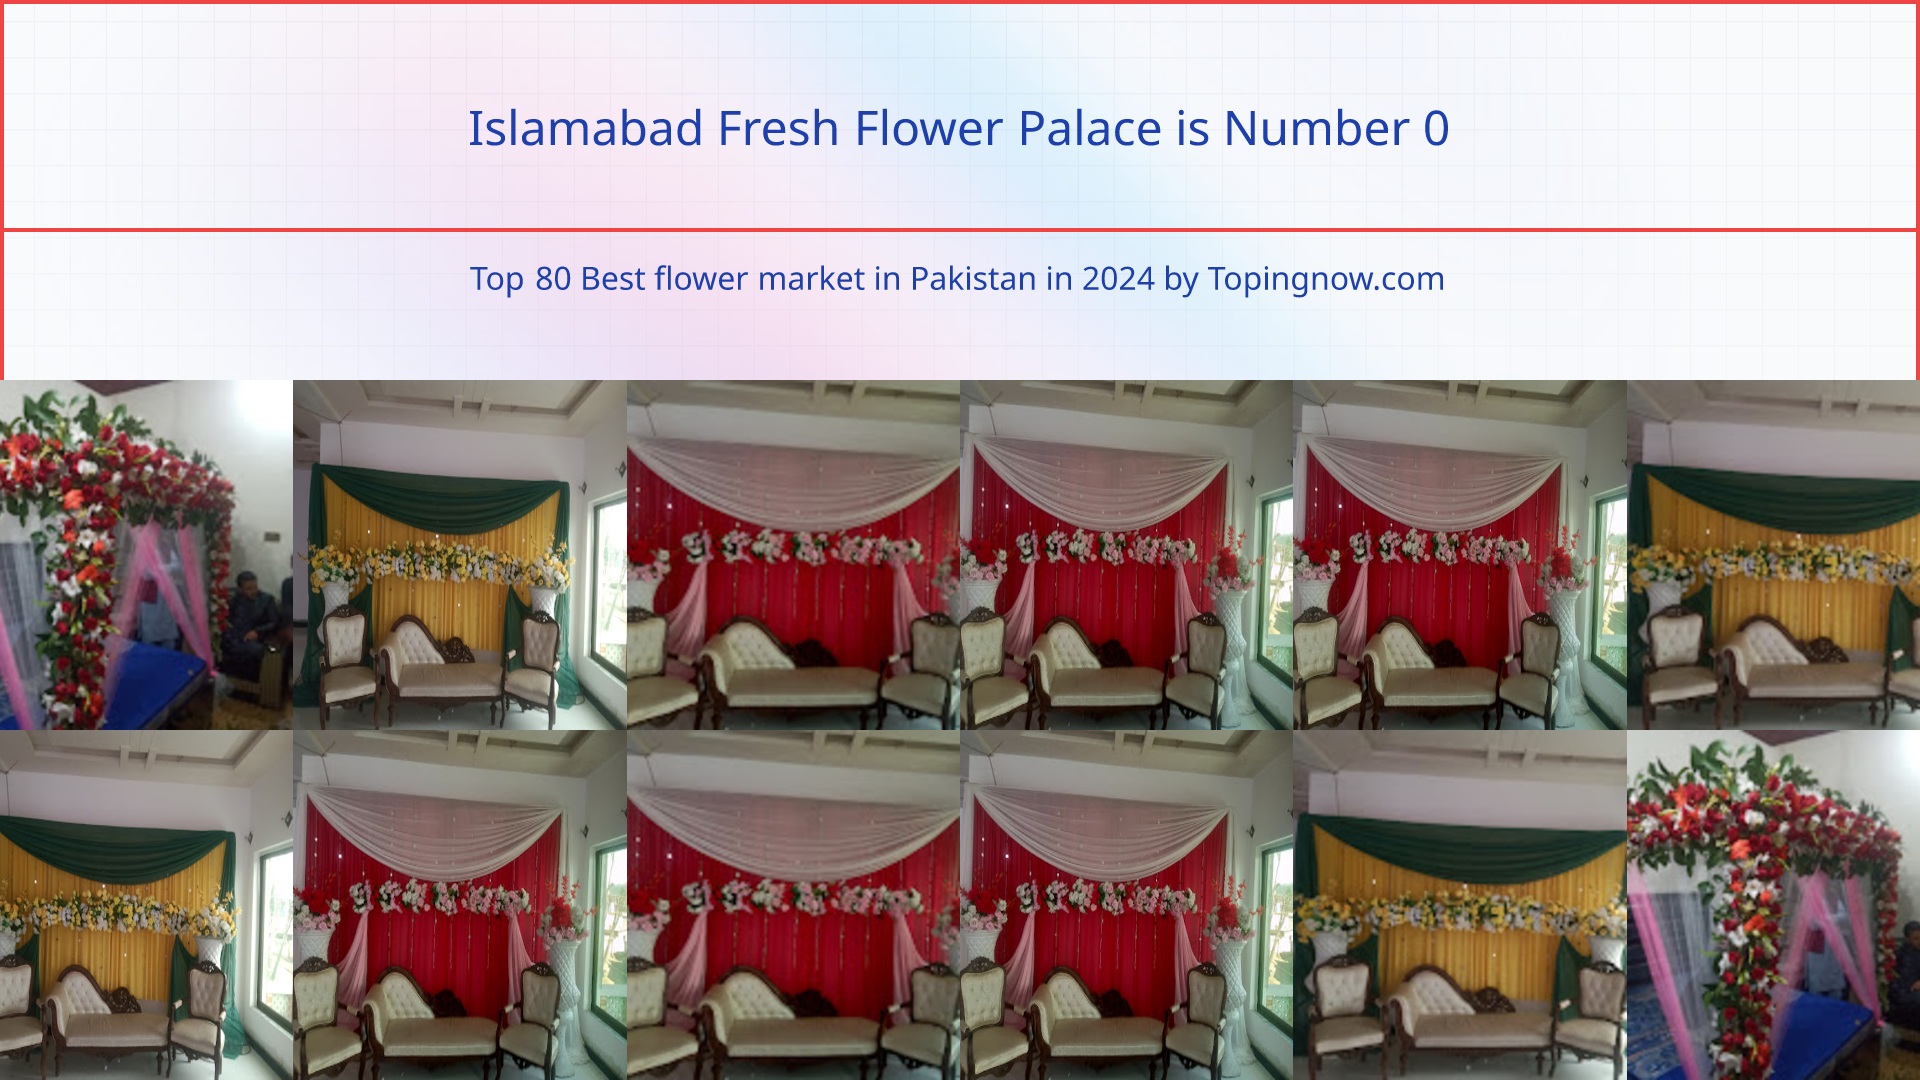 Islamabad Fresh Flower Palace: Top 80 Best flower market in Pakistan in 2024